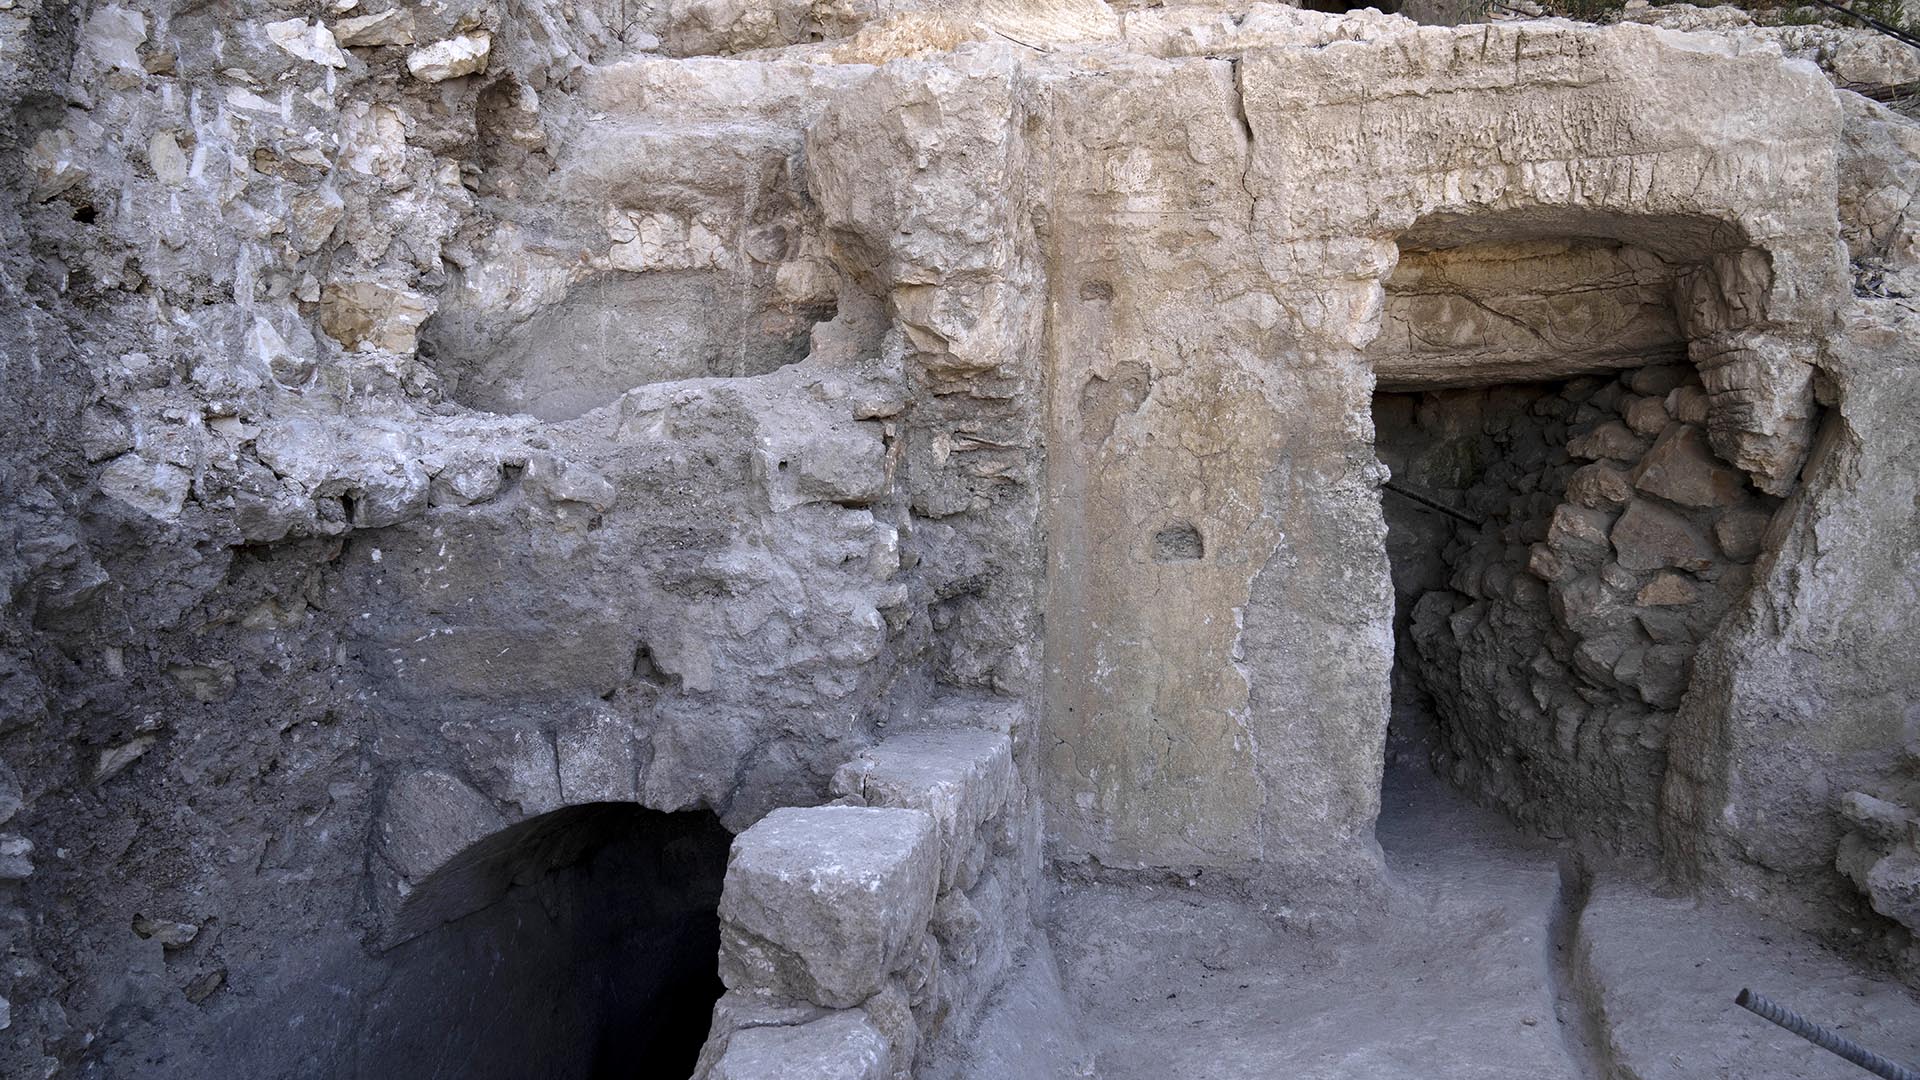 El sitio de un baño ritual judío o mikveh, izquierda, descubierto cerca del Muro Occidental en la Ciudad Vieja de Jerusalén. (Foto AP/Maya Alleruzzo)

